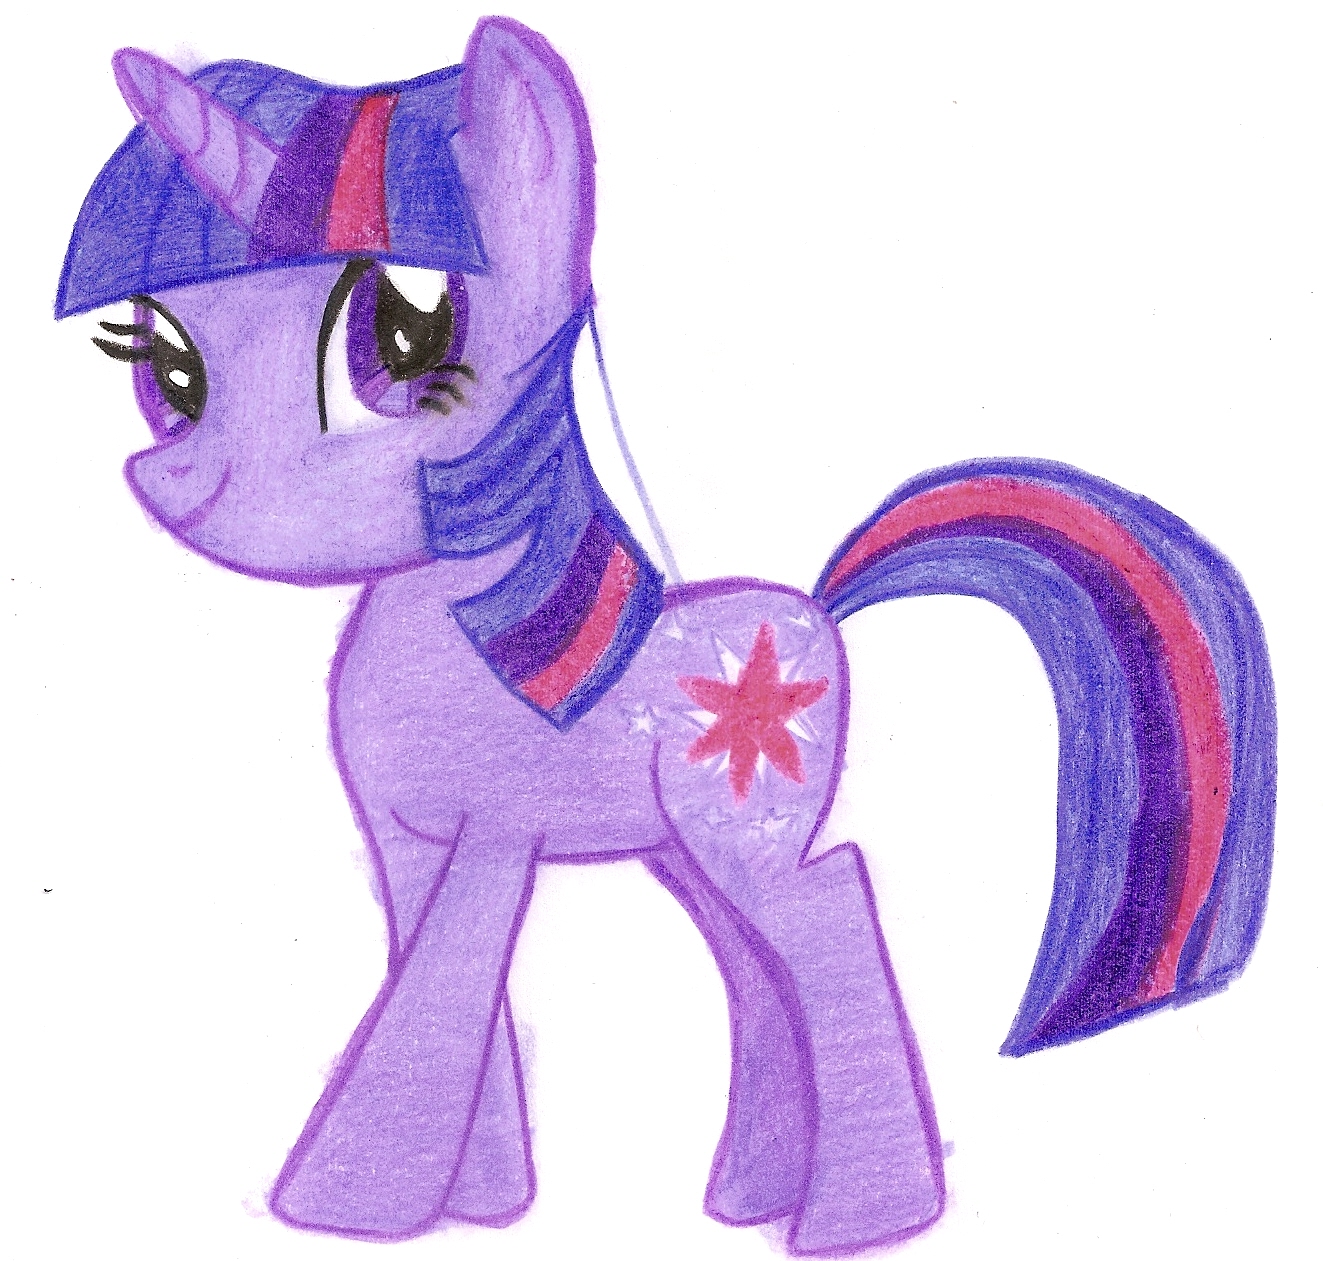 Fnf pony. Пони розовая фиолетовая. Малитал пони фиолетовая пони. Фиолетовая пони Единорог. Картинки my little Pony.